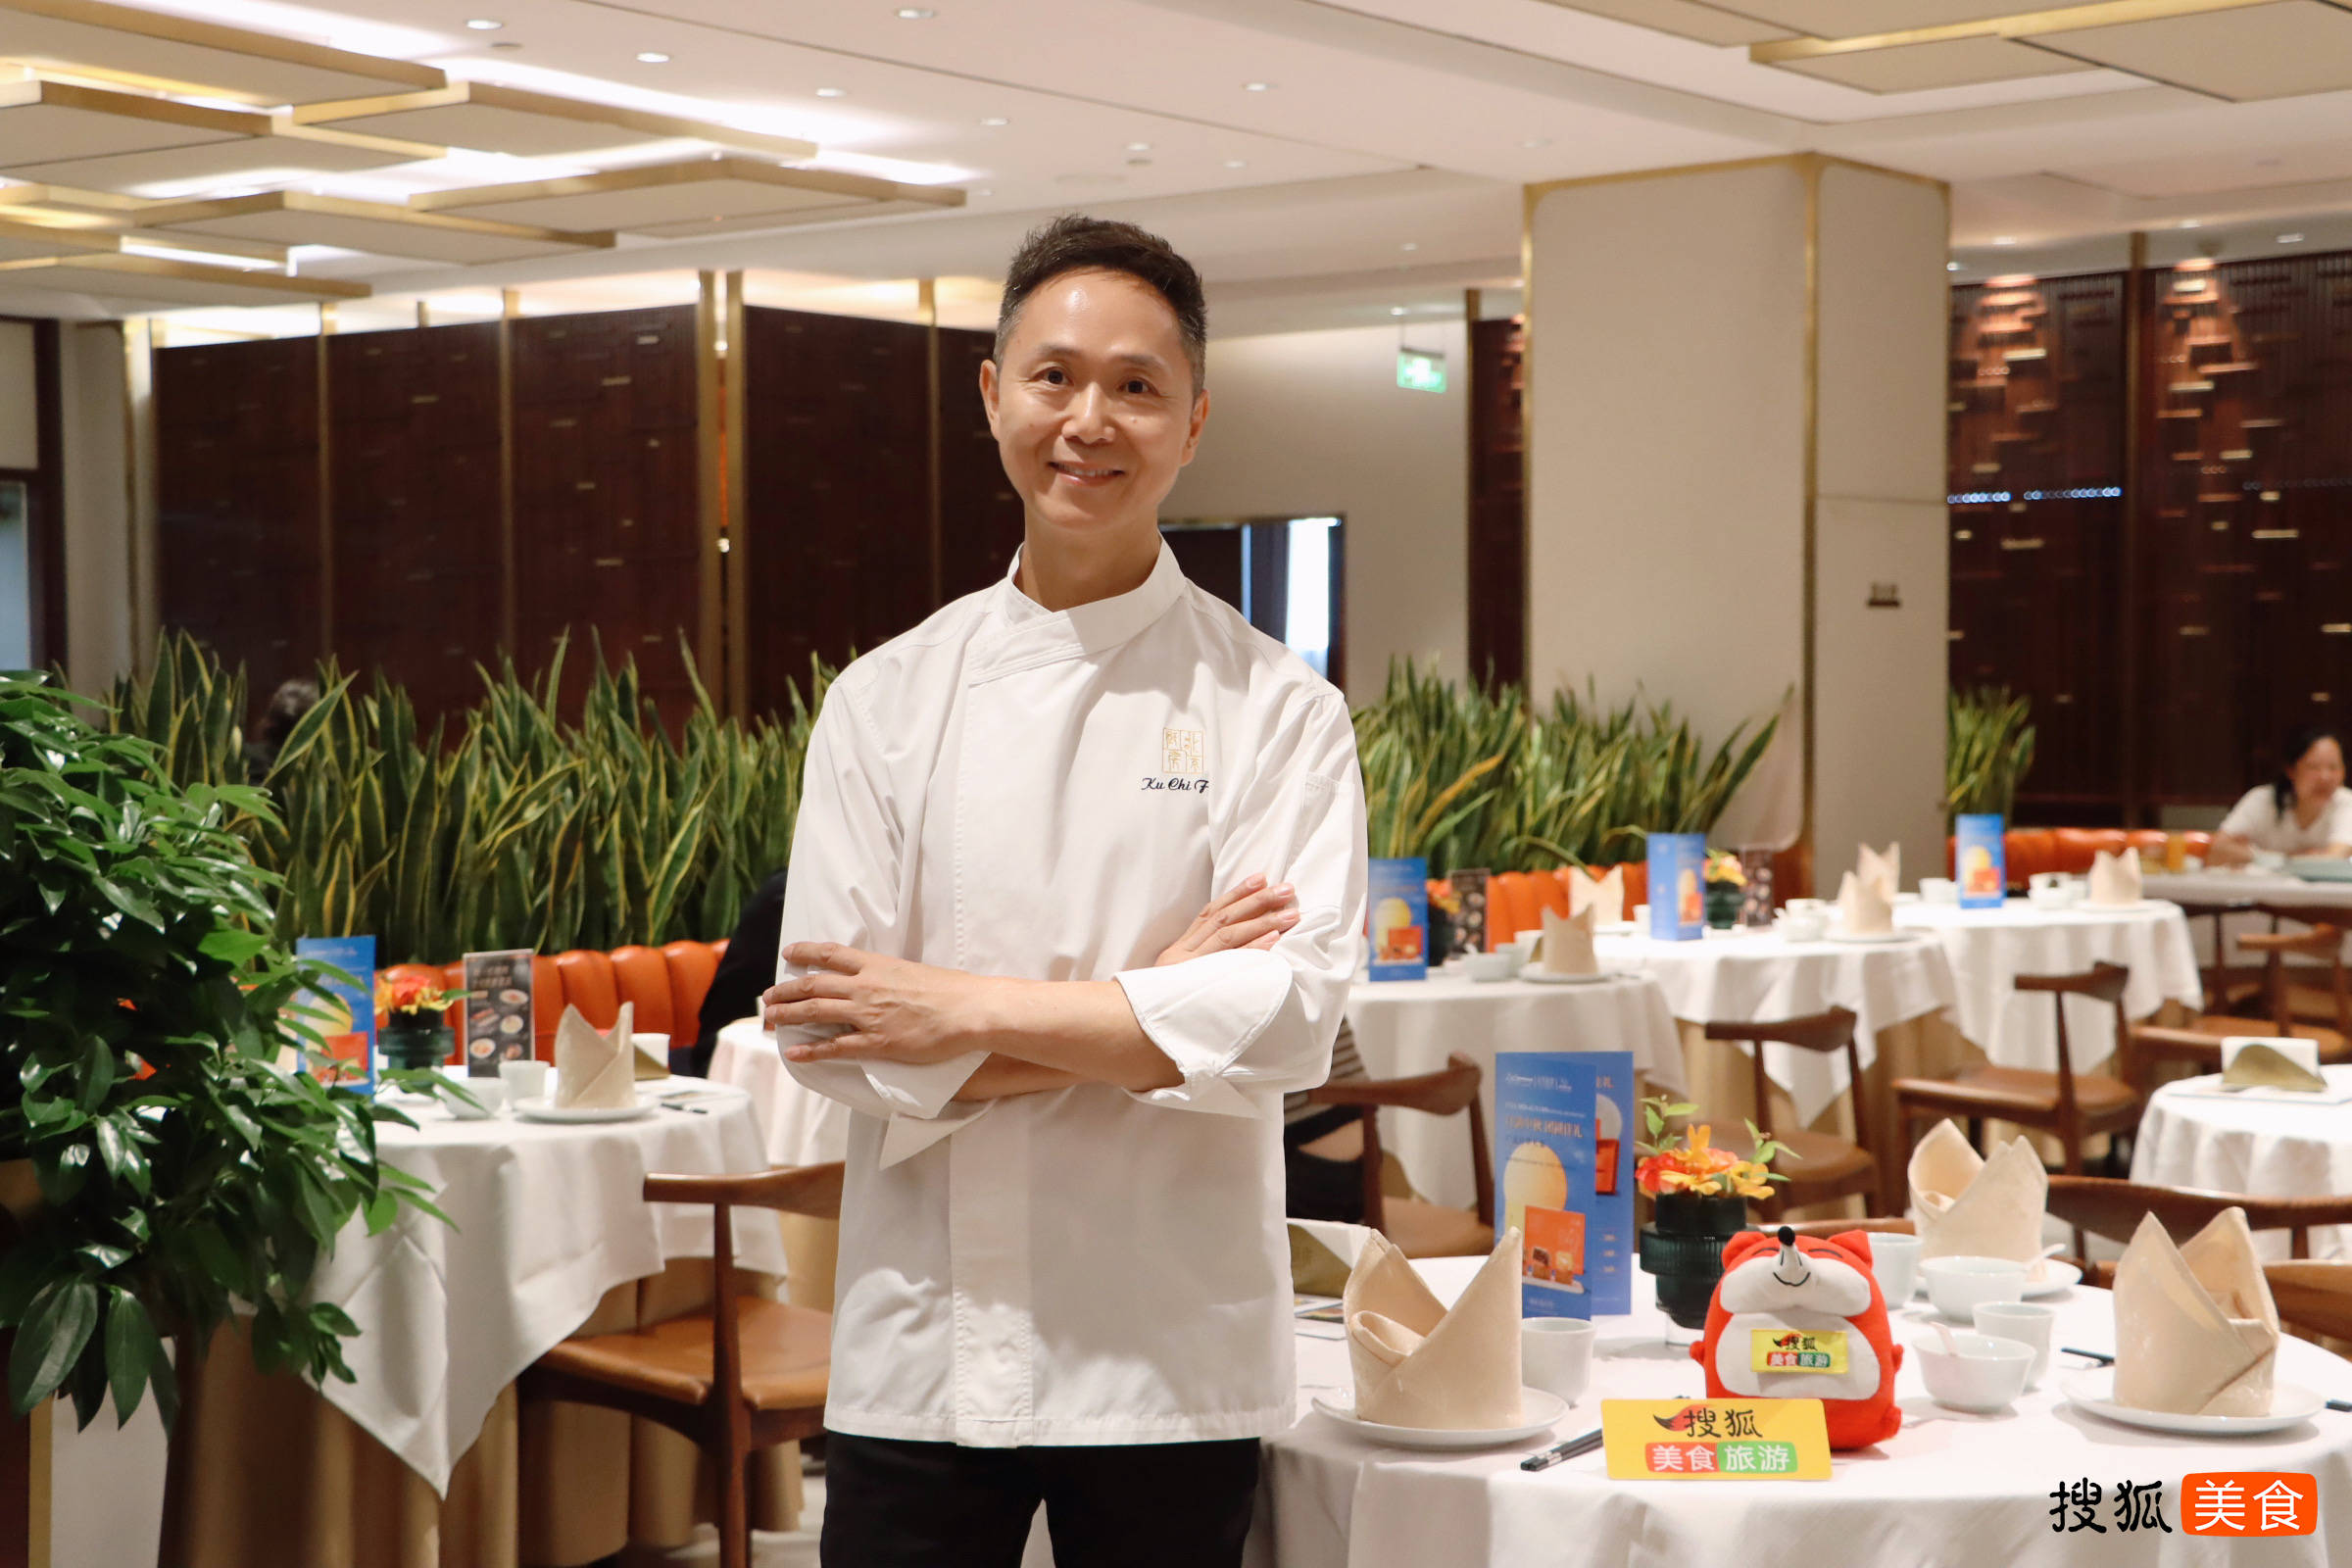 “菜是餐厅的灵魂”，古志辉和他的北京厨房